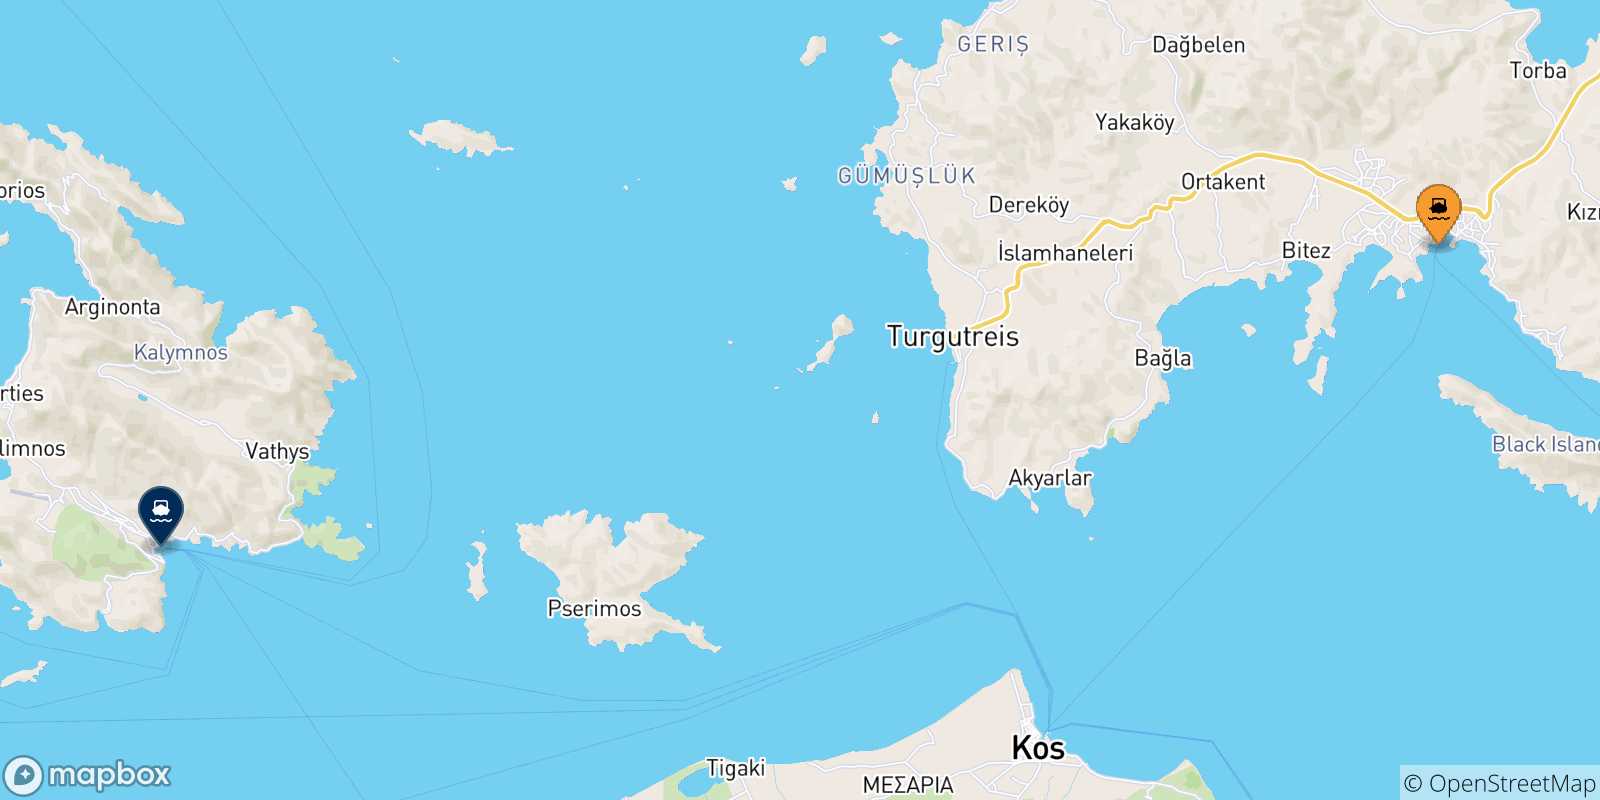 Mappa delle possibili rotte tra la Turchia e Kalymnos